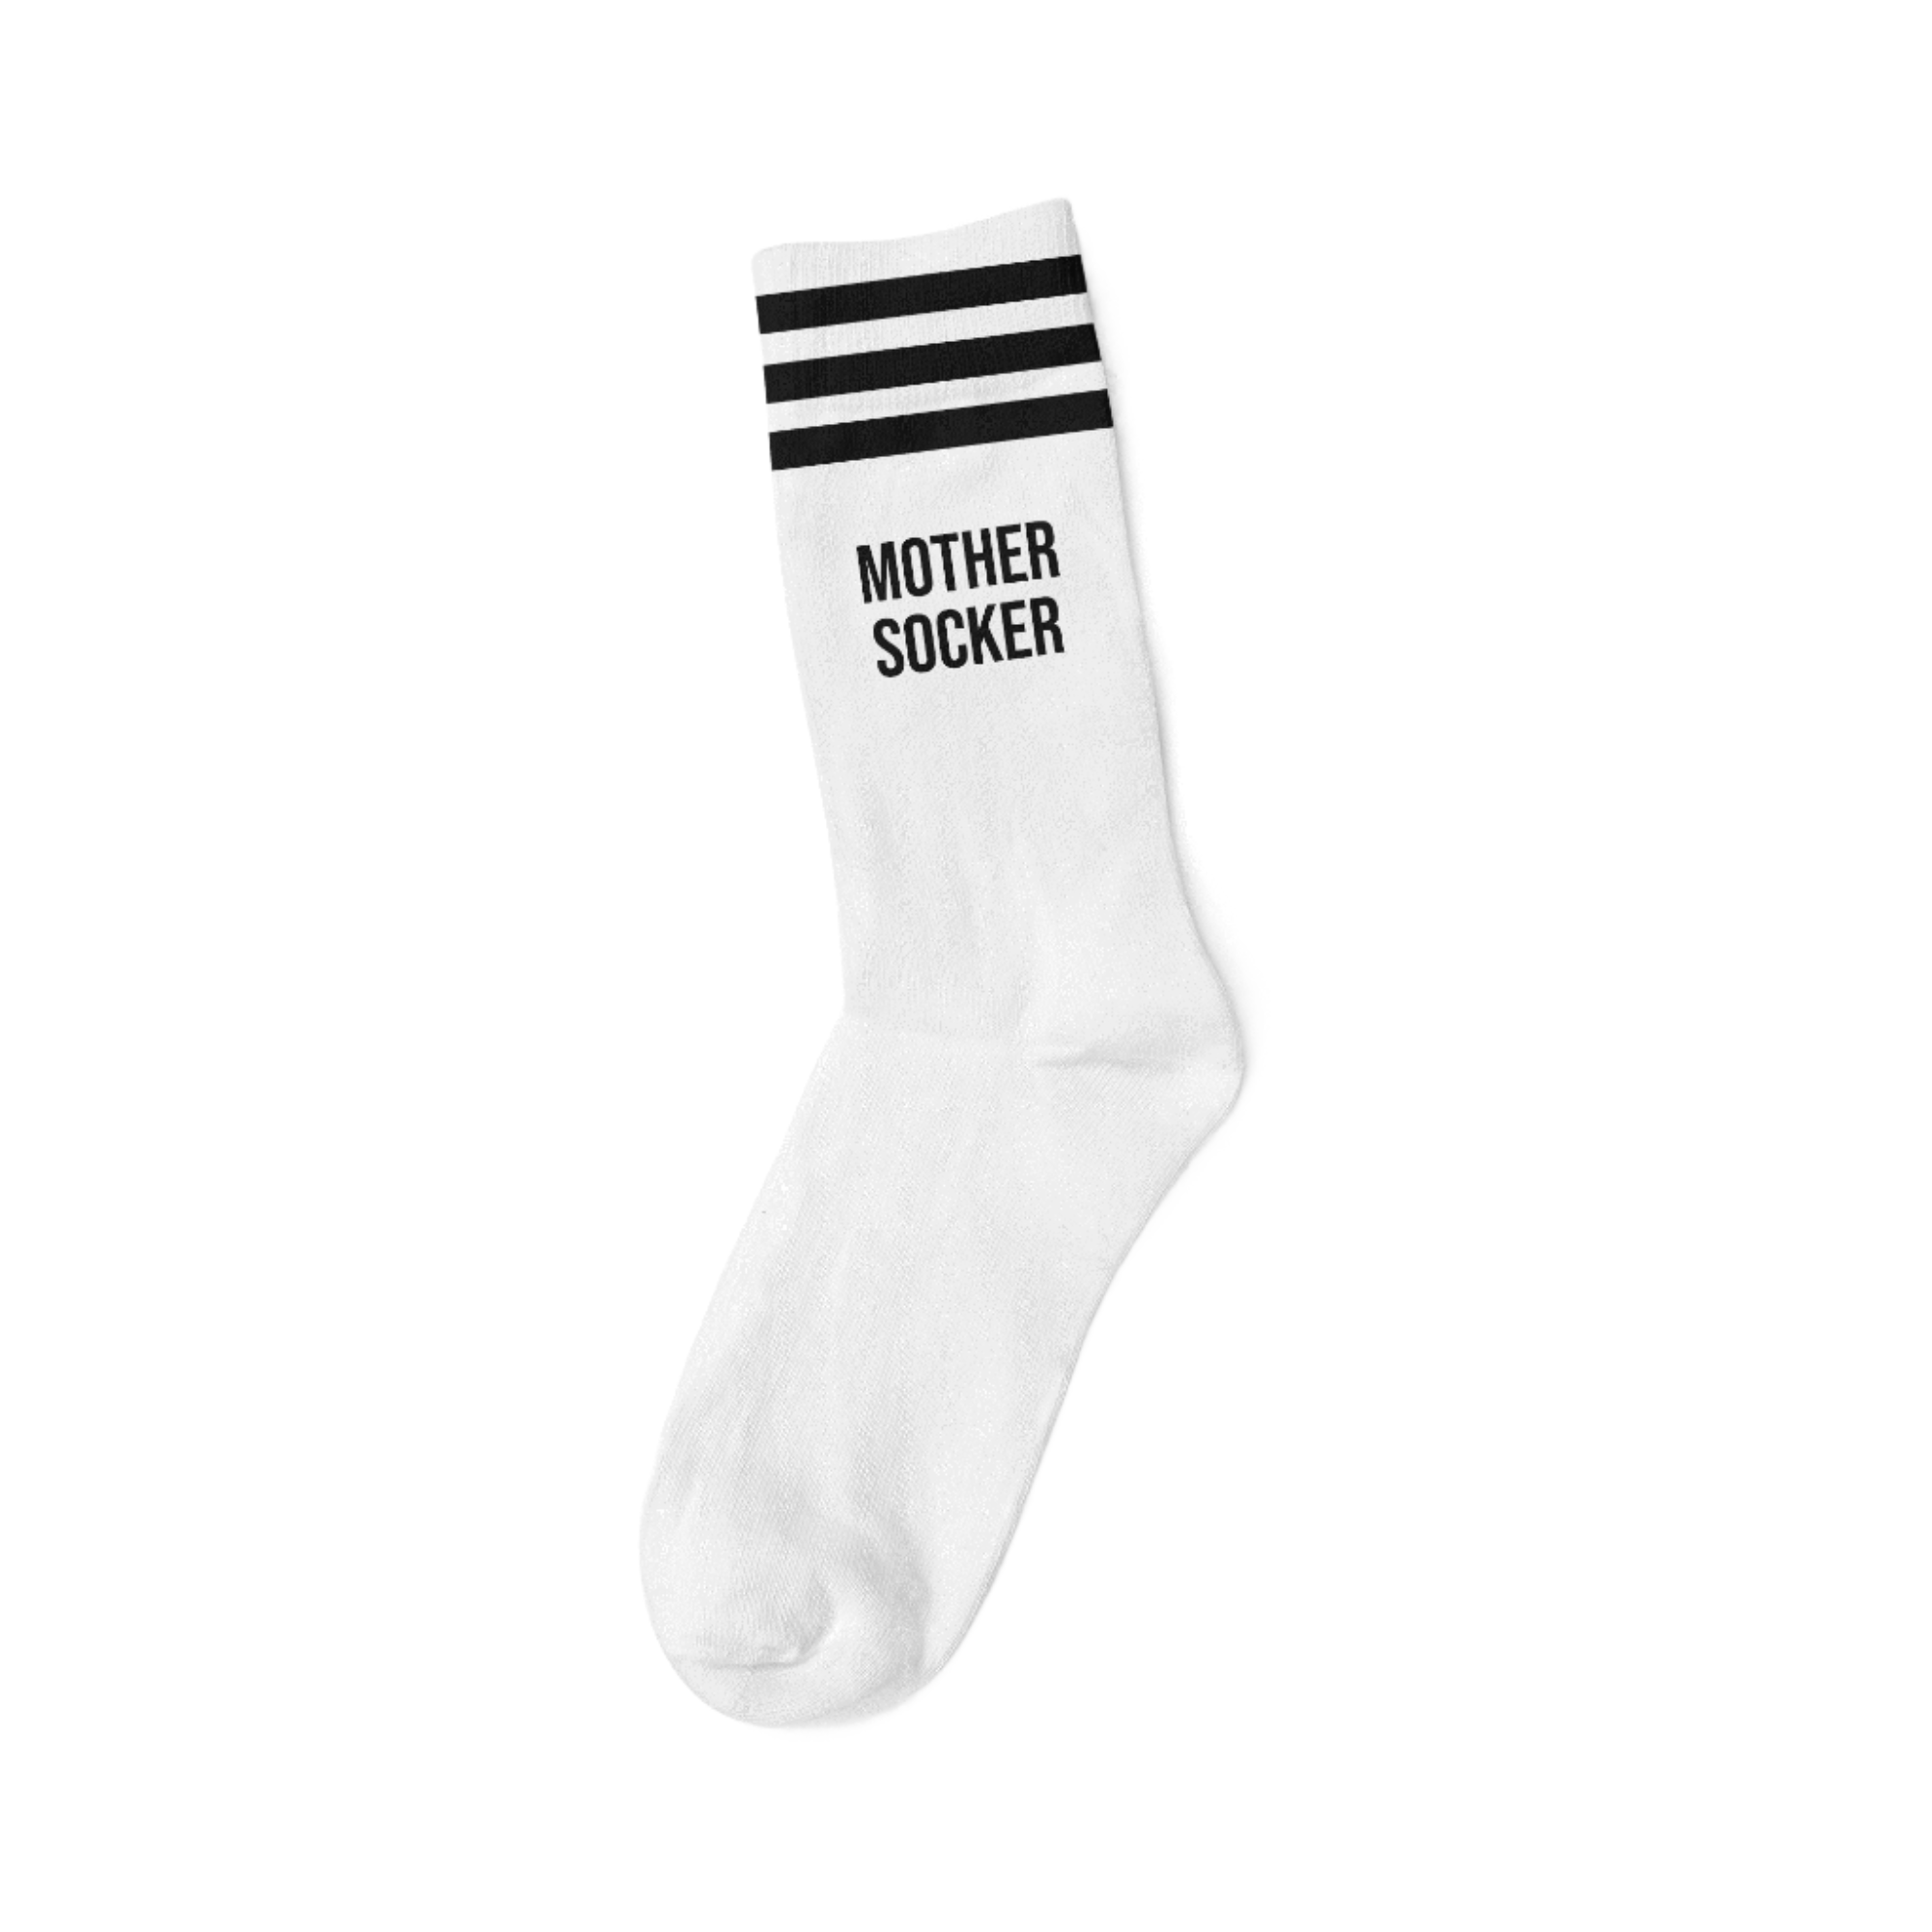 Socks Mother Socker White - Mothersocker